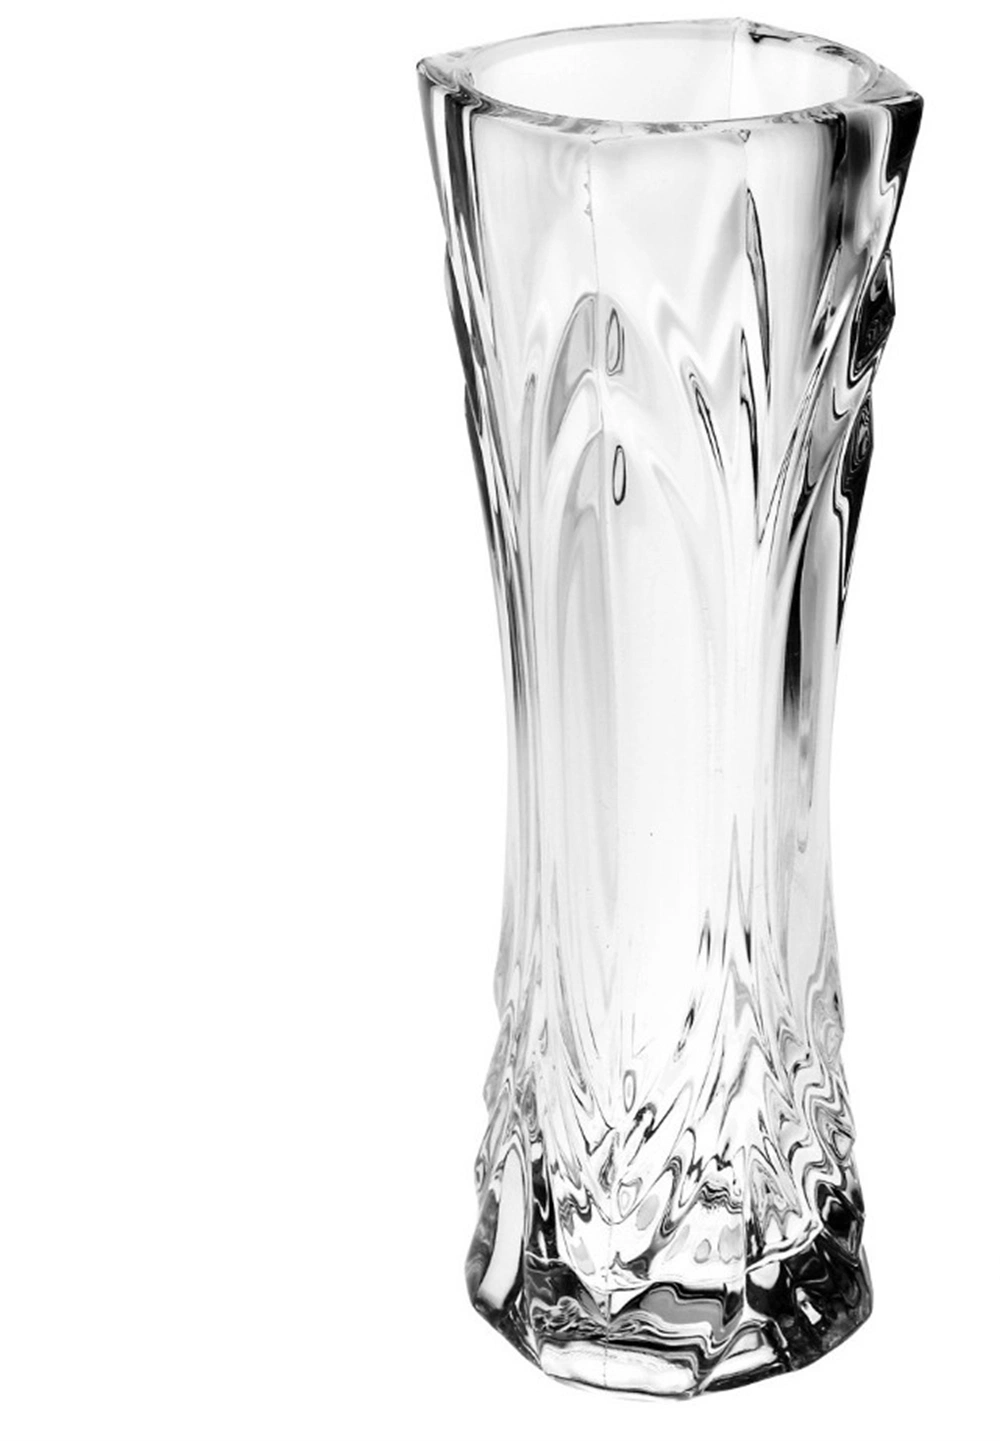 Modern Resin Vase Crystal Vase for Wedding Decoration Flower Transparent Water Culture Plastic Vase Display Table Flower Pots Tall Cylinder Clear Vases